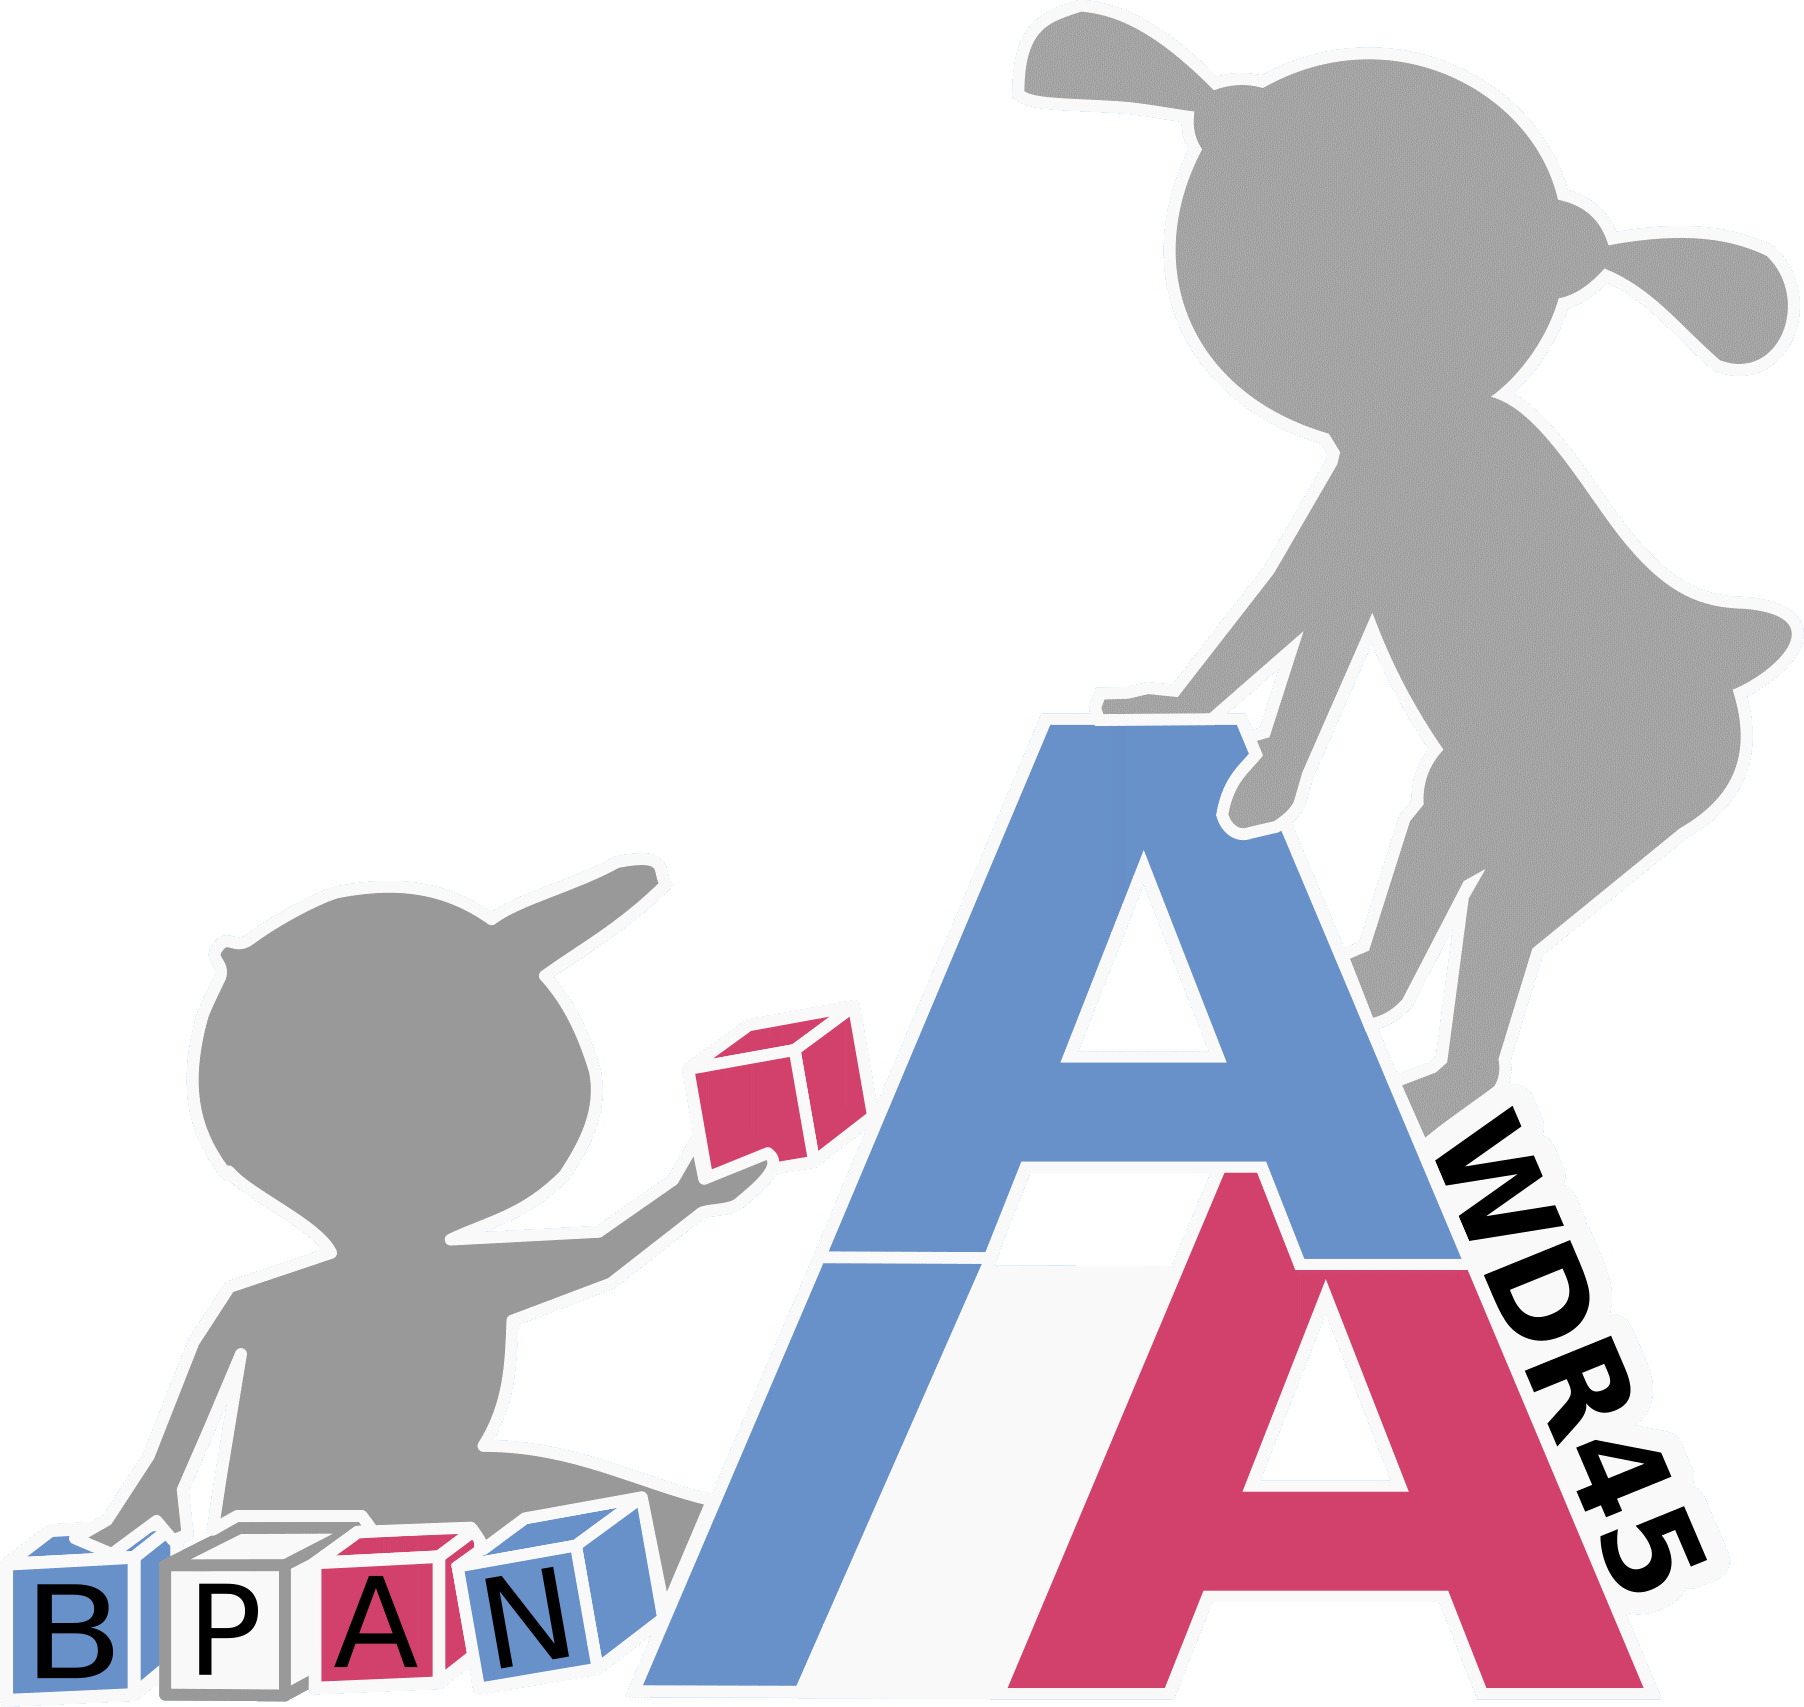 Logo Association "Autour du BPAN"